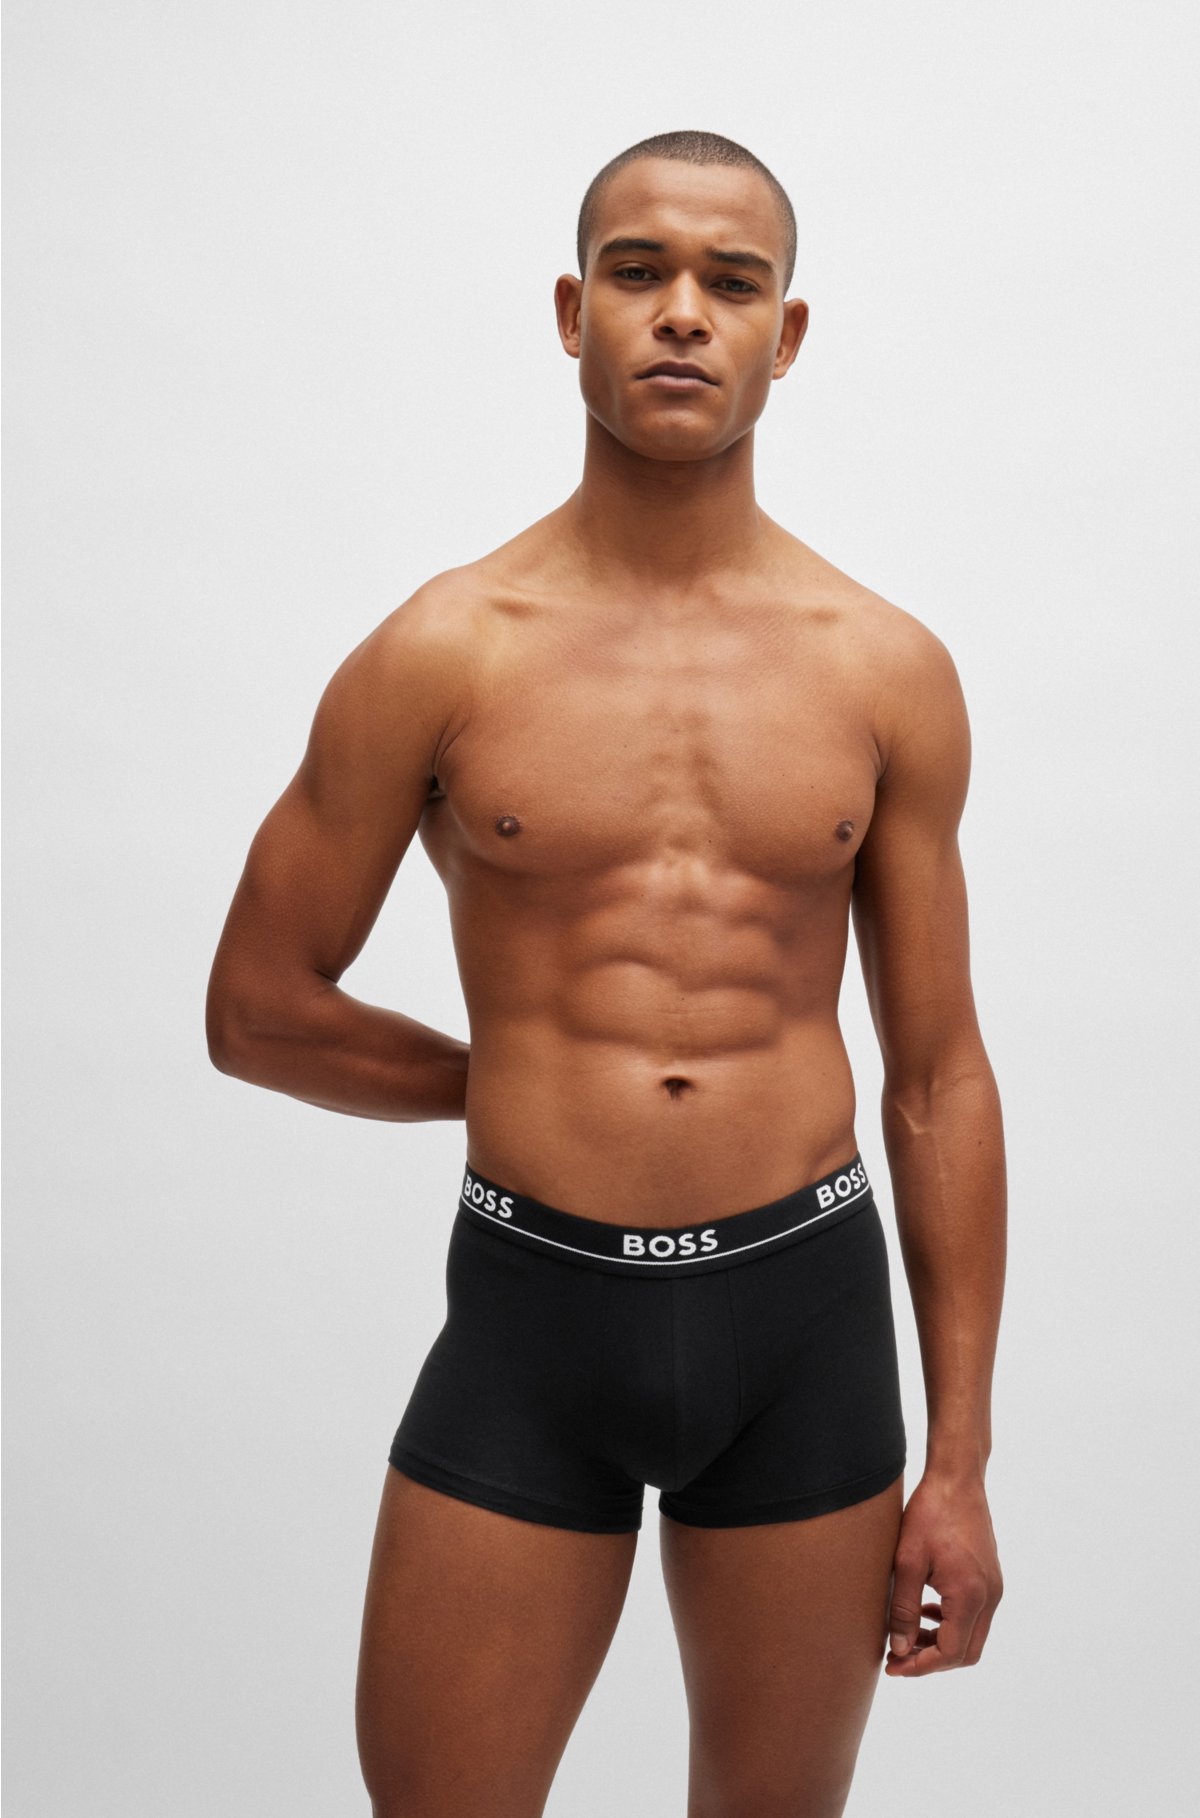 Fashion 6-Pack Men's Cotton Underwear Boxers - ASSORTED @ Best Price Online